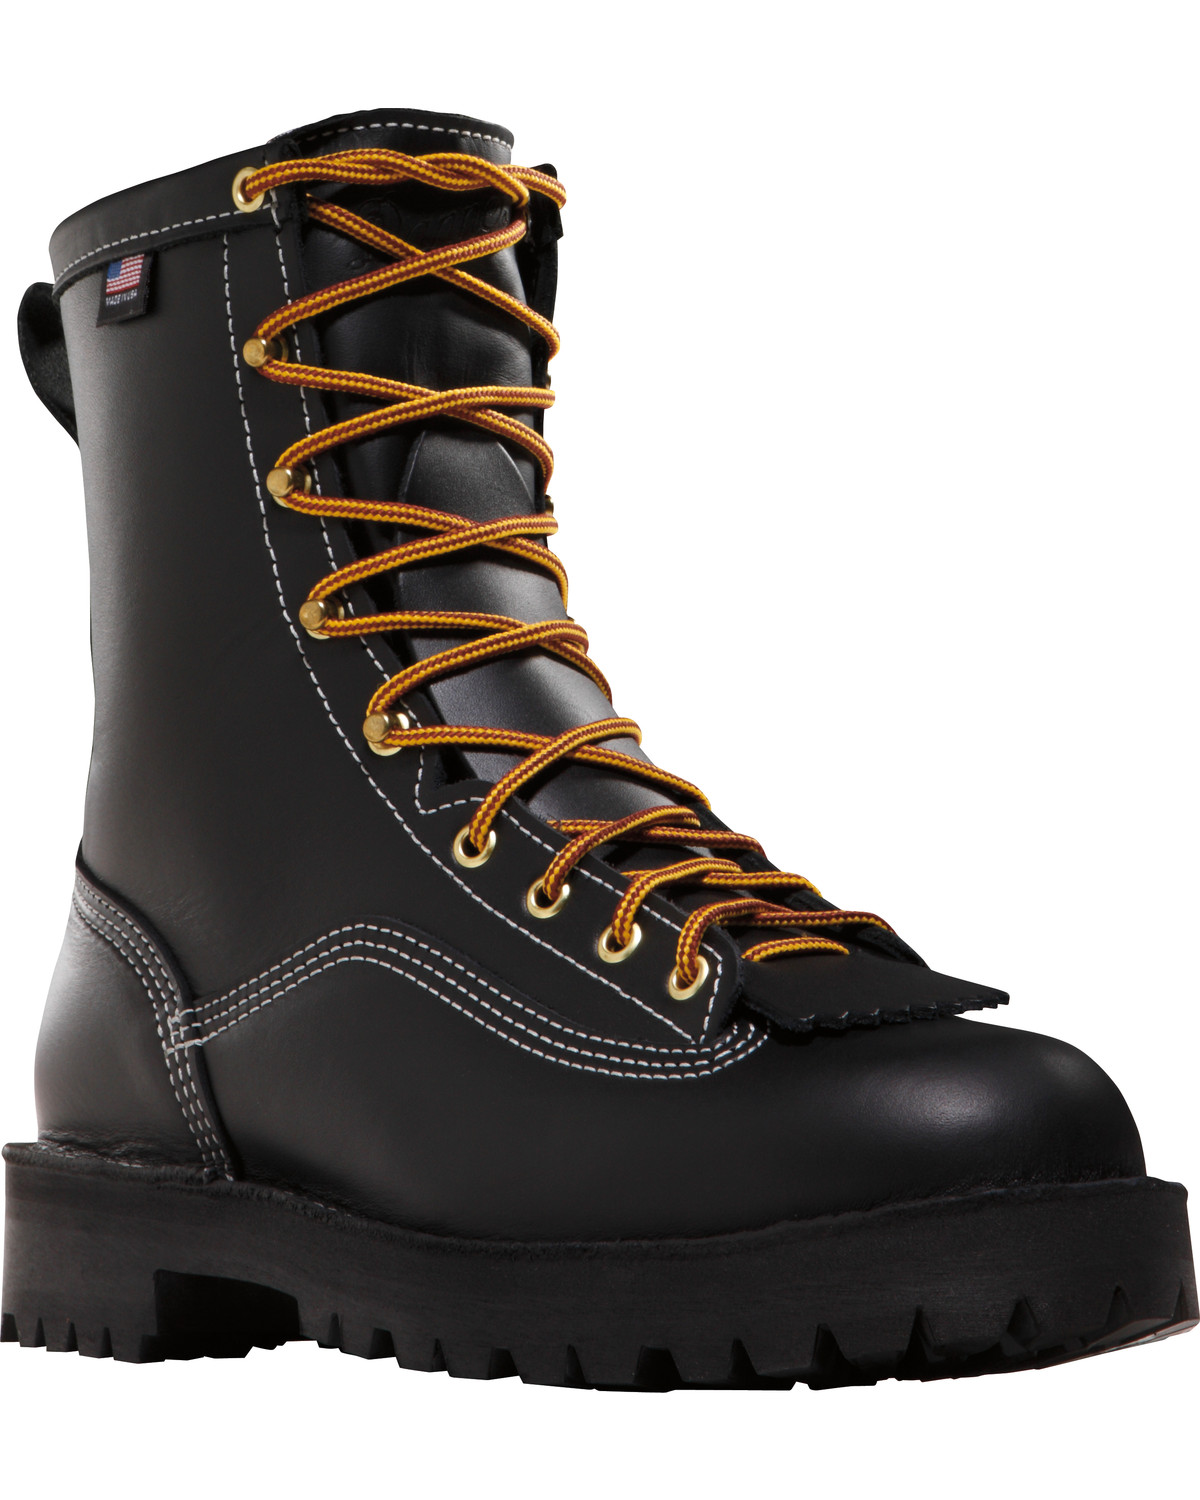 Danner Men's 8" Super Rain Forest GTX® Insulated Work Boots